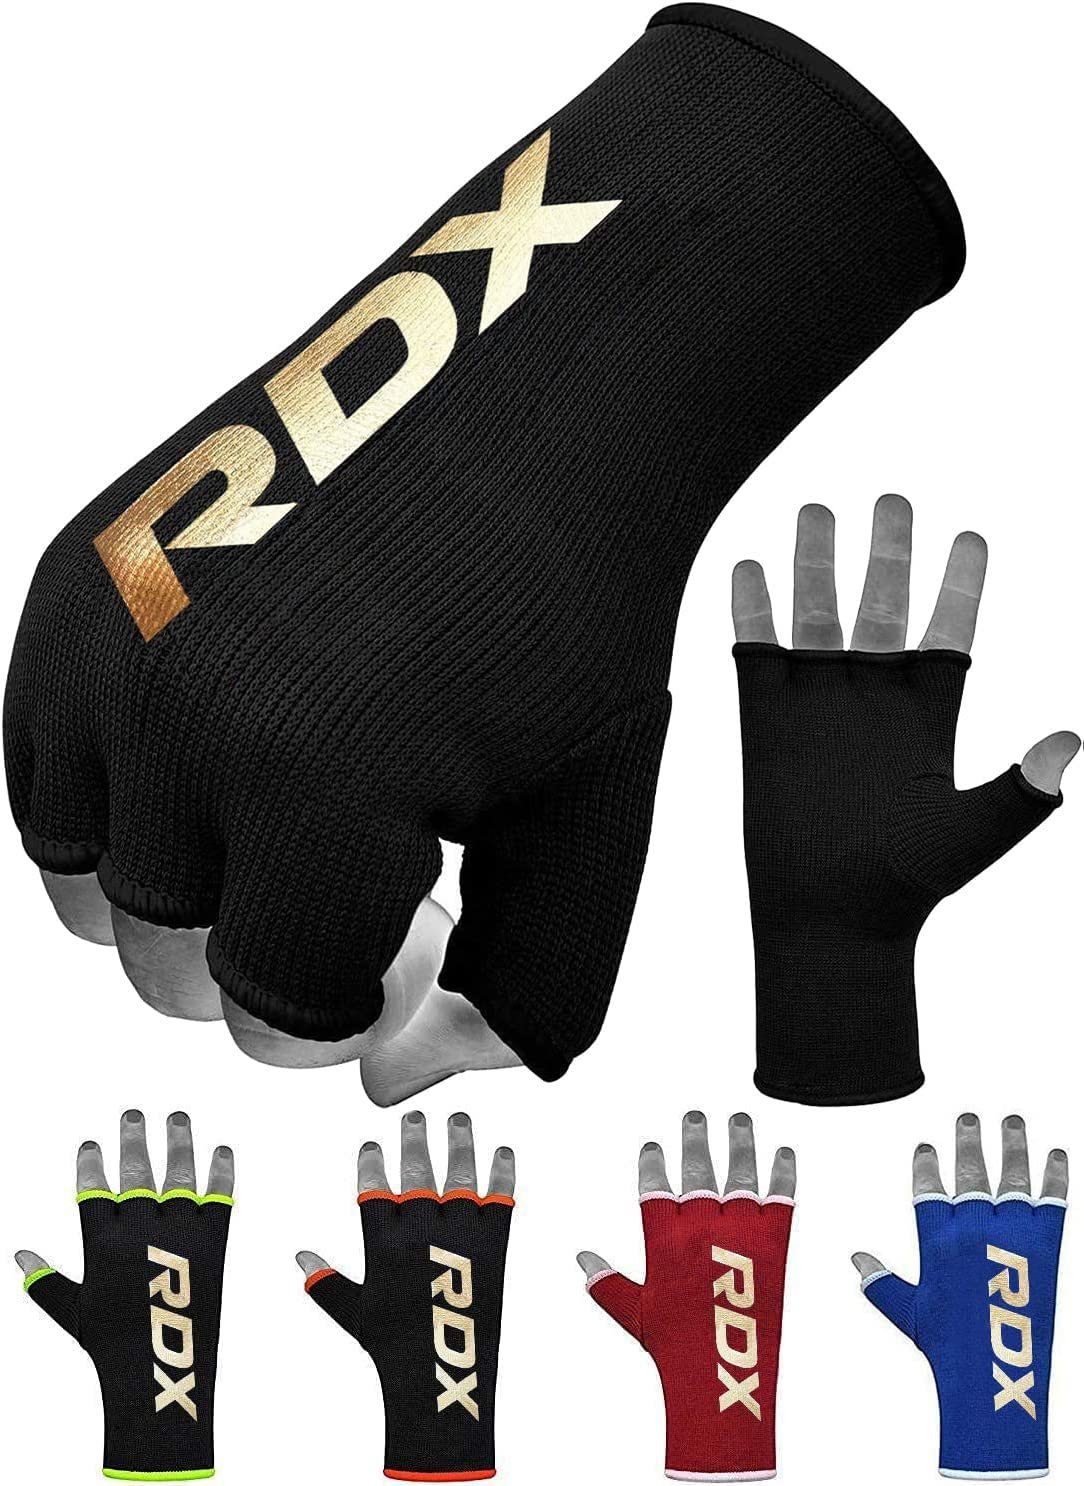 RDX RB Professionelle Boxen Hand Bandagen Set Neu